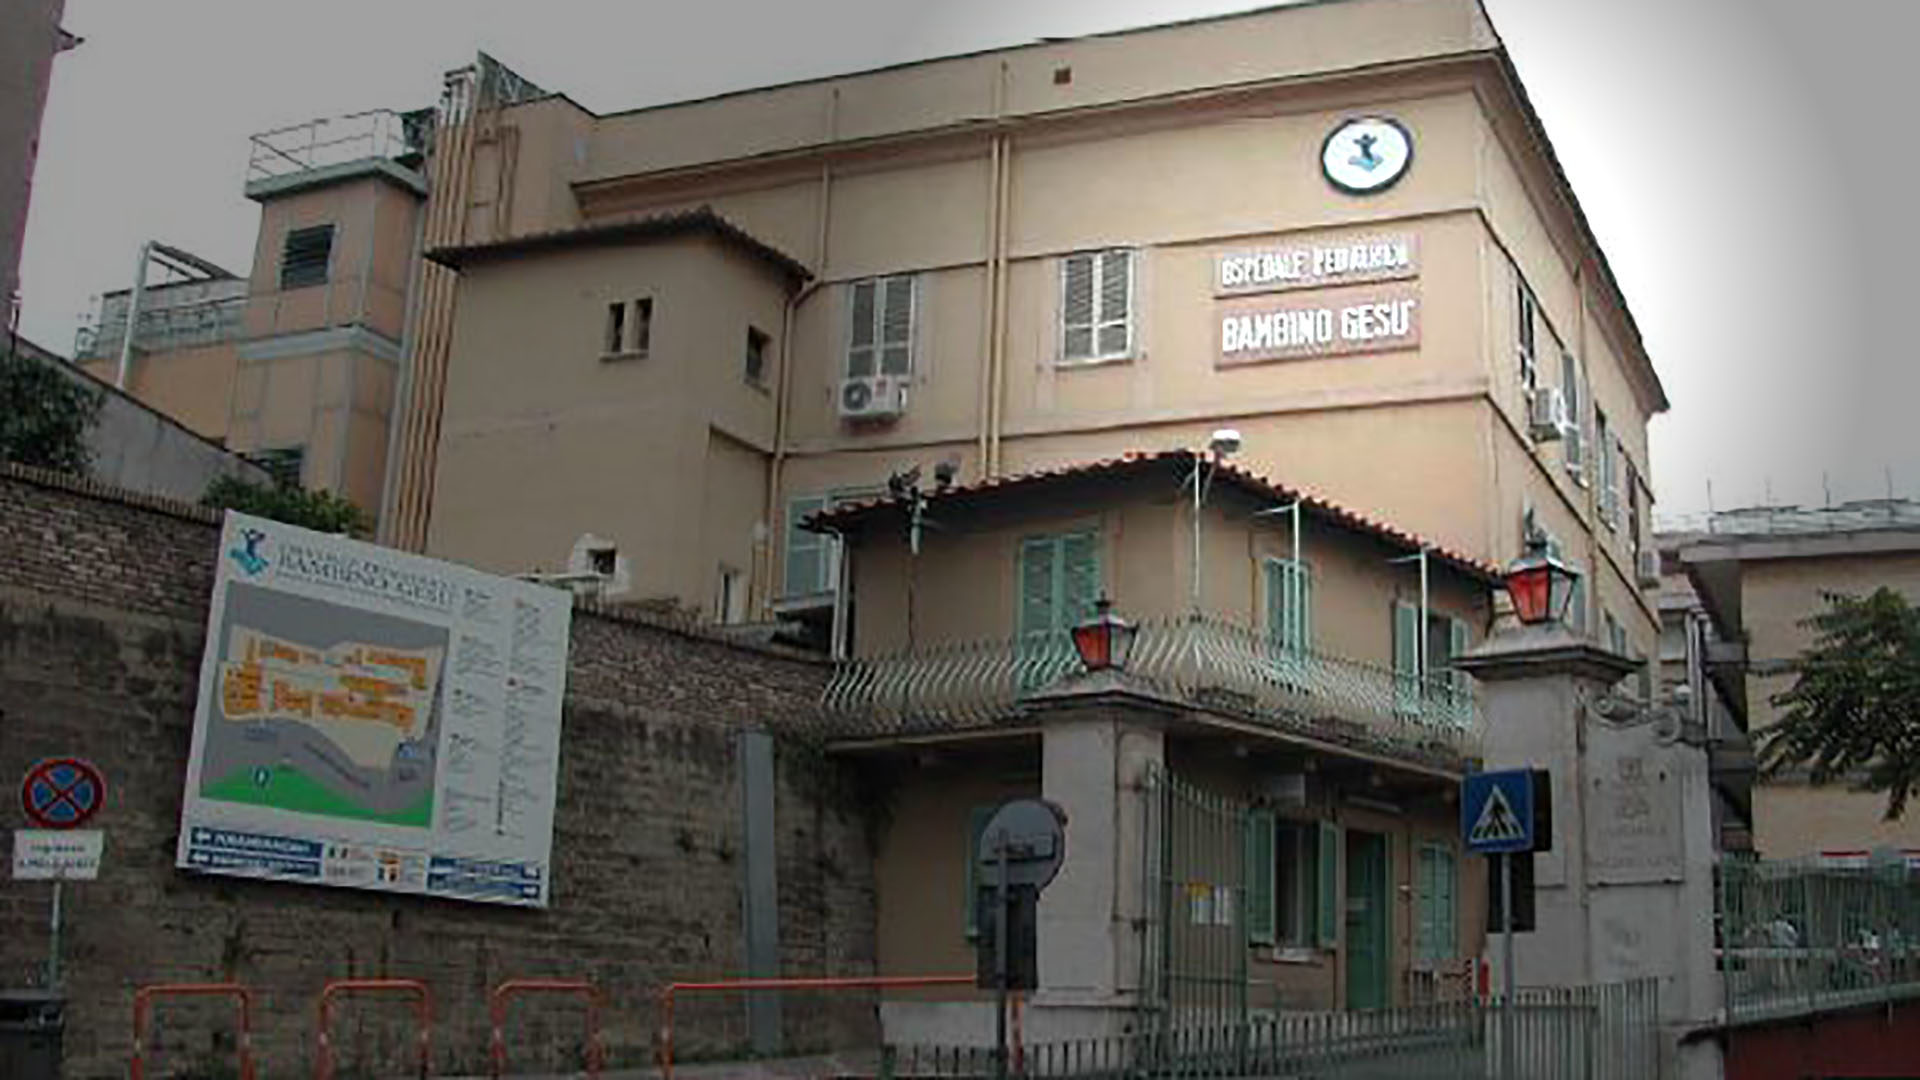 Une ombre judiciaire continue de planer sur l'hôpital pédiatrique Bambino Gesù. (Photo: Wikimedia Commons/Marten253/CC BY-SA 3.0)